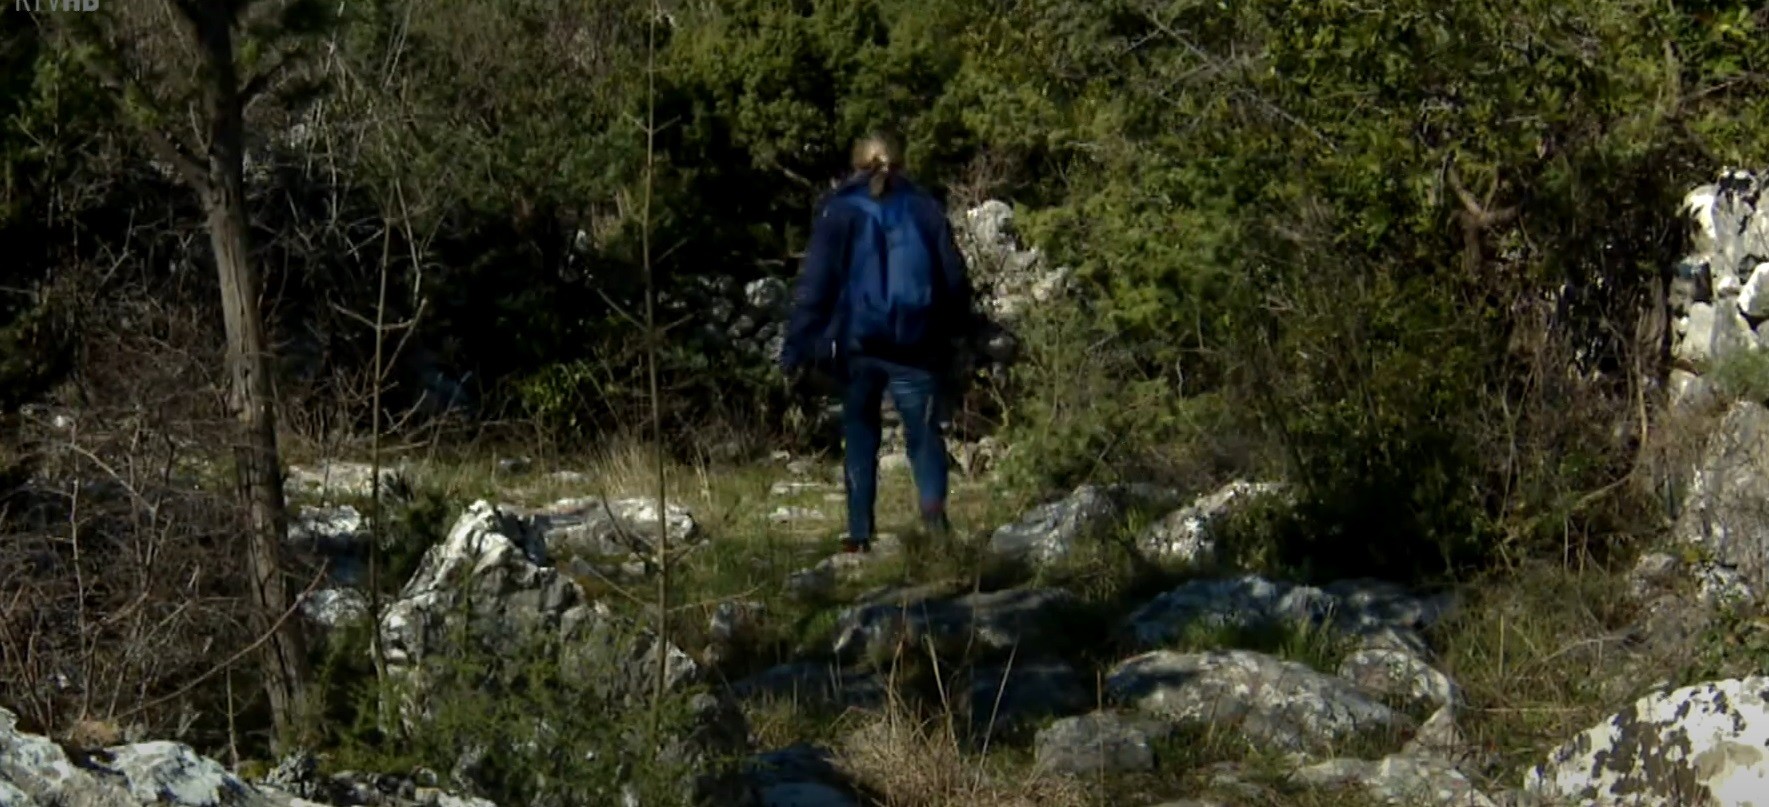 VIDEO: Camino od Dubrovnika do Međugorja bi mogao postati jedna od najposjećenijih